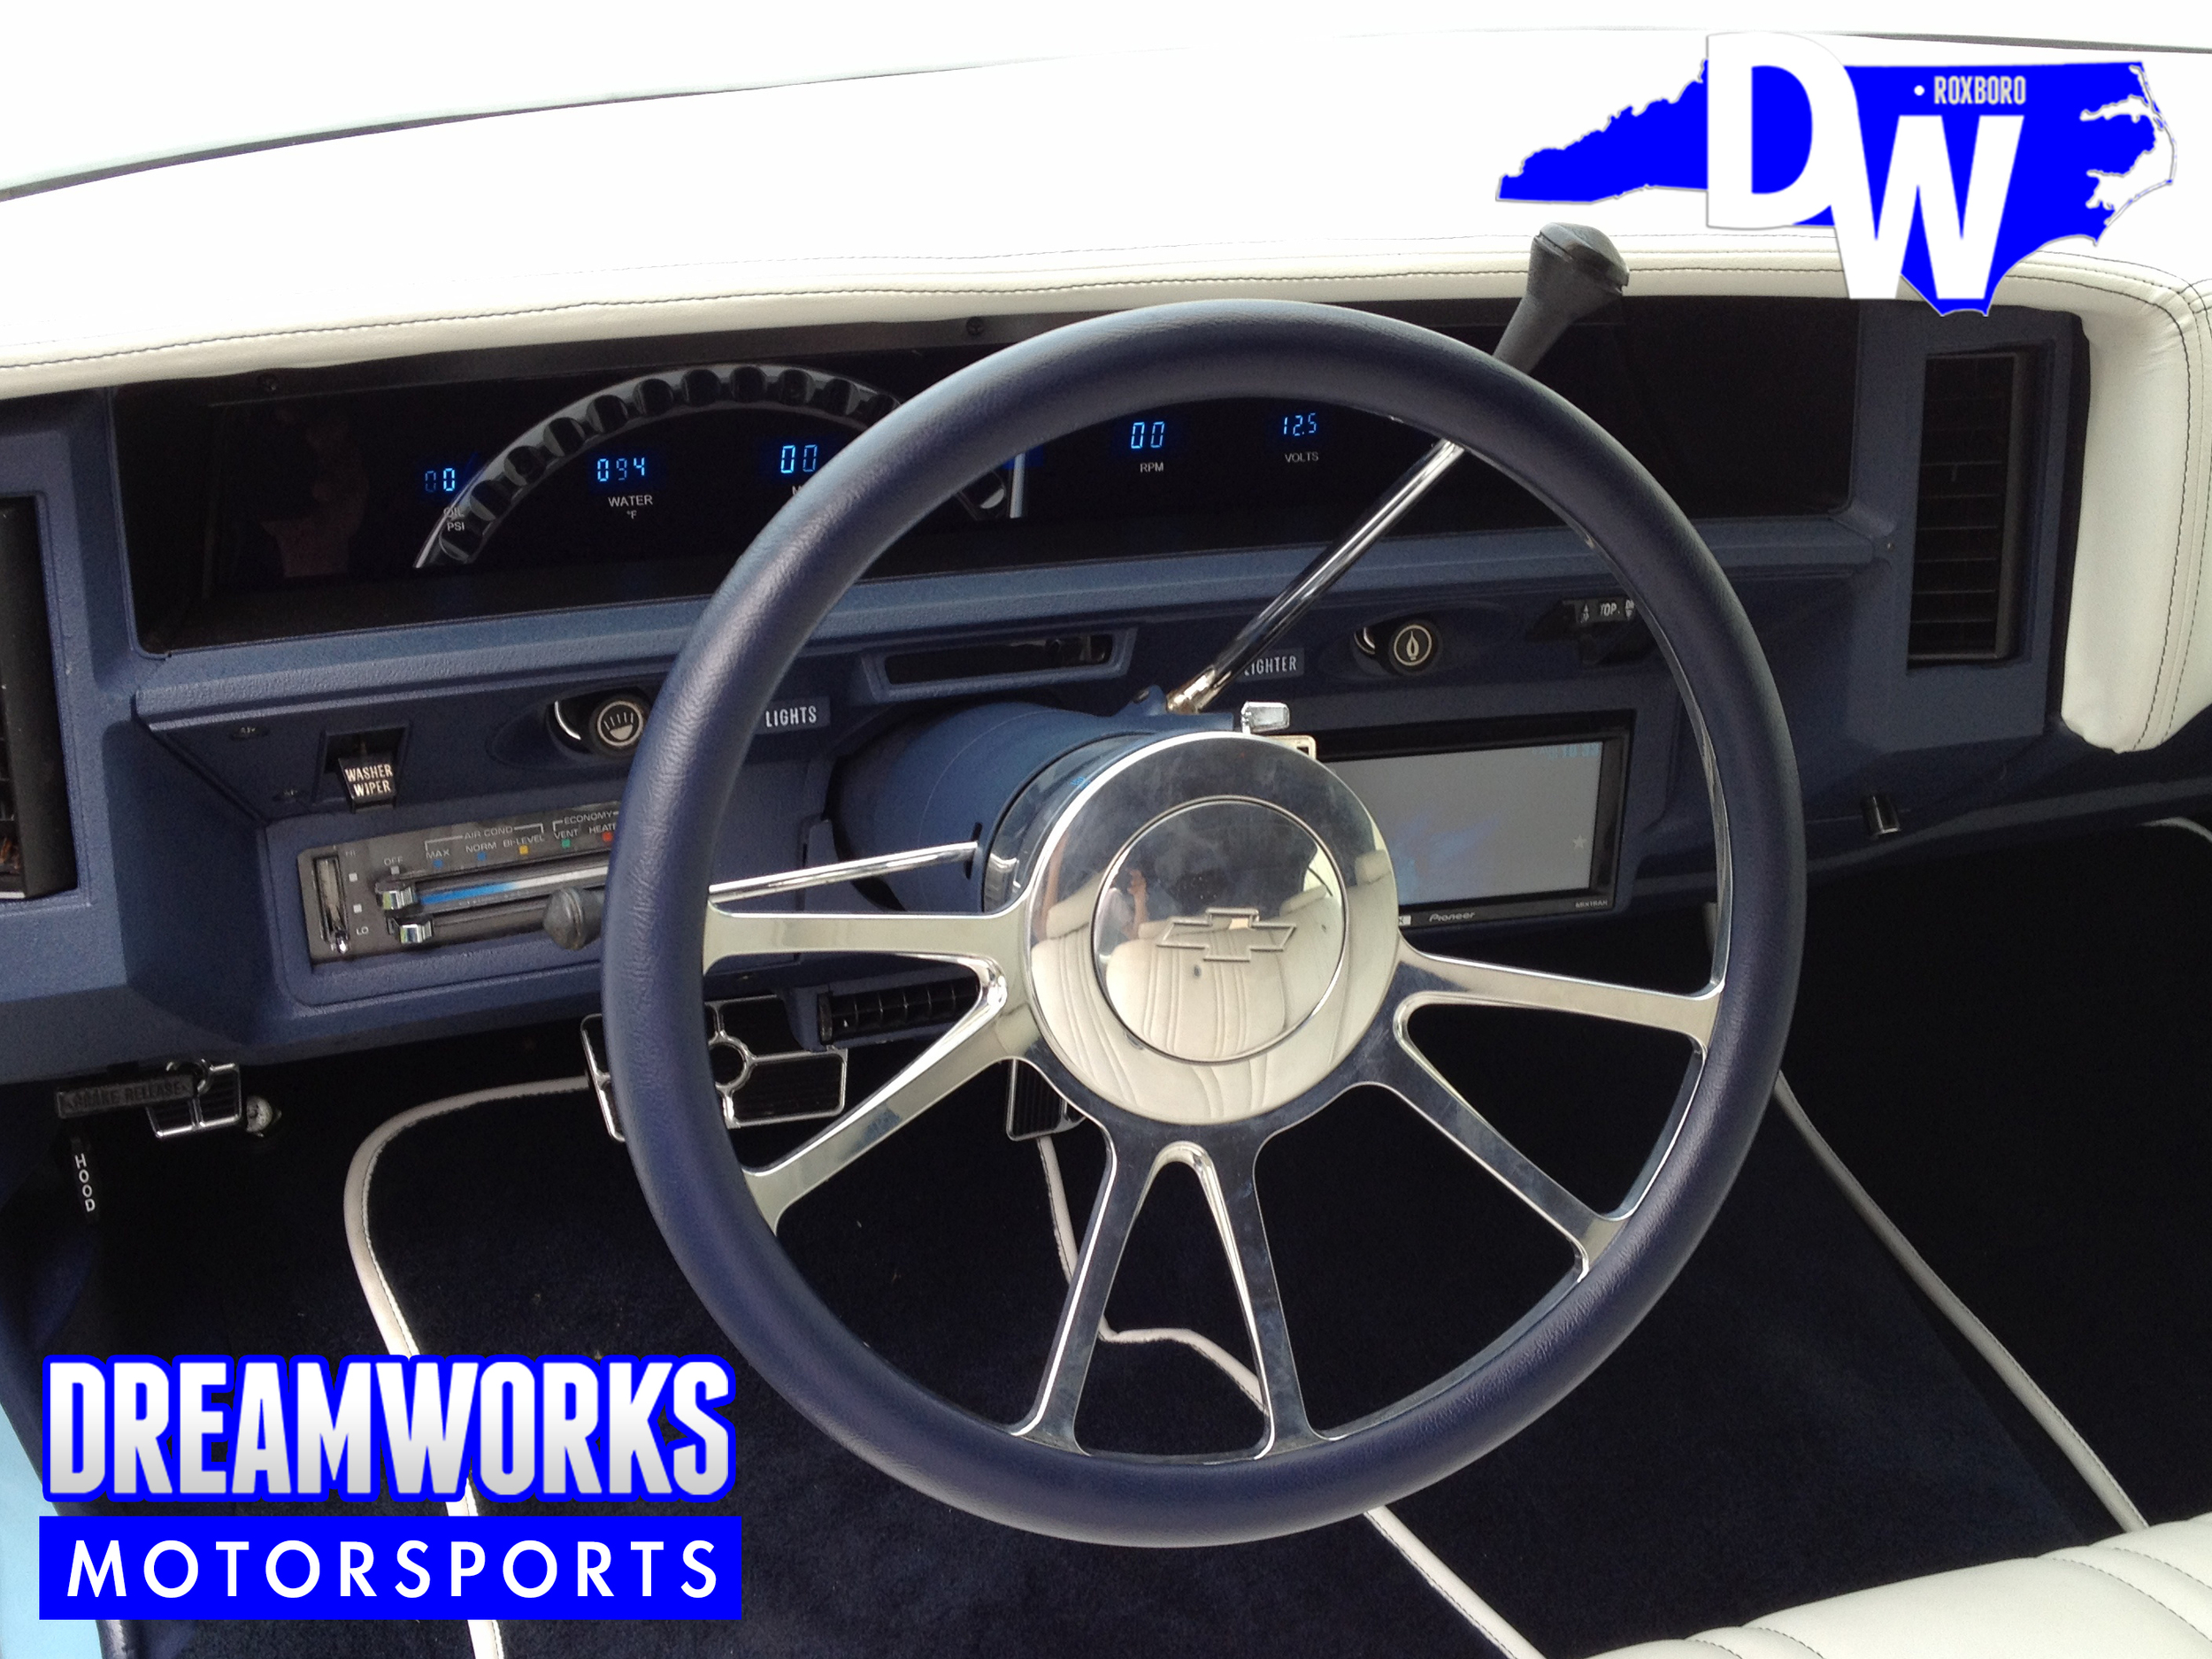 75-Chevrolet-Caprice-Robert-Quinn-Dreamworks-Motorsports-5.jpg